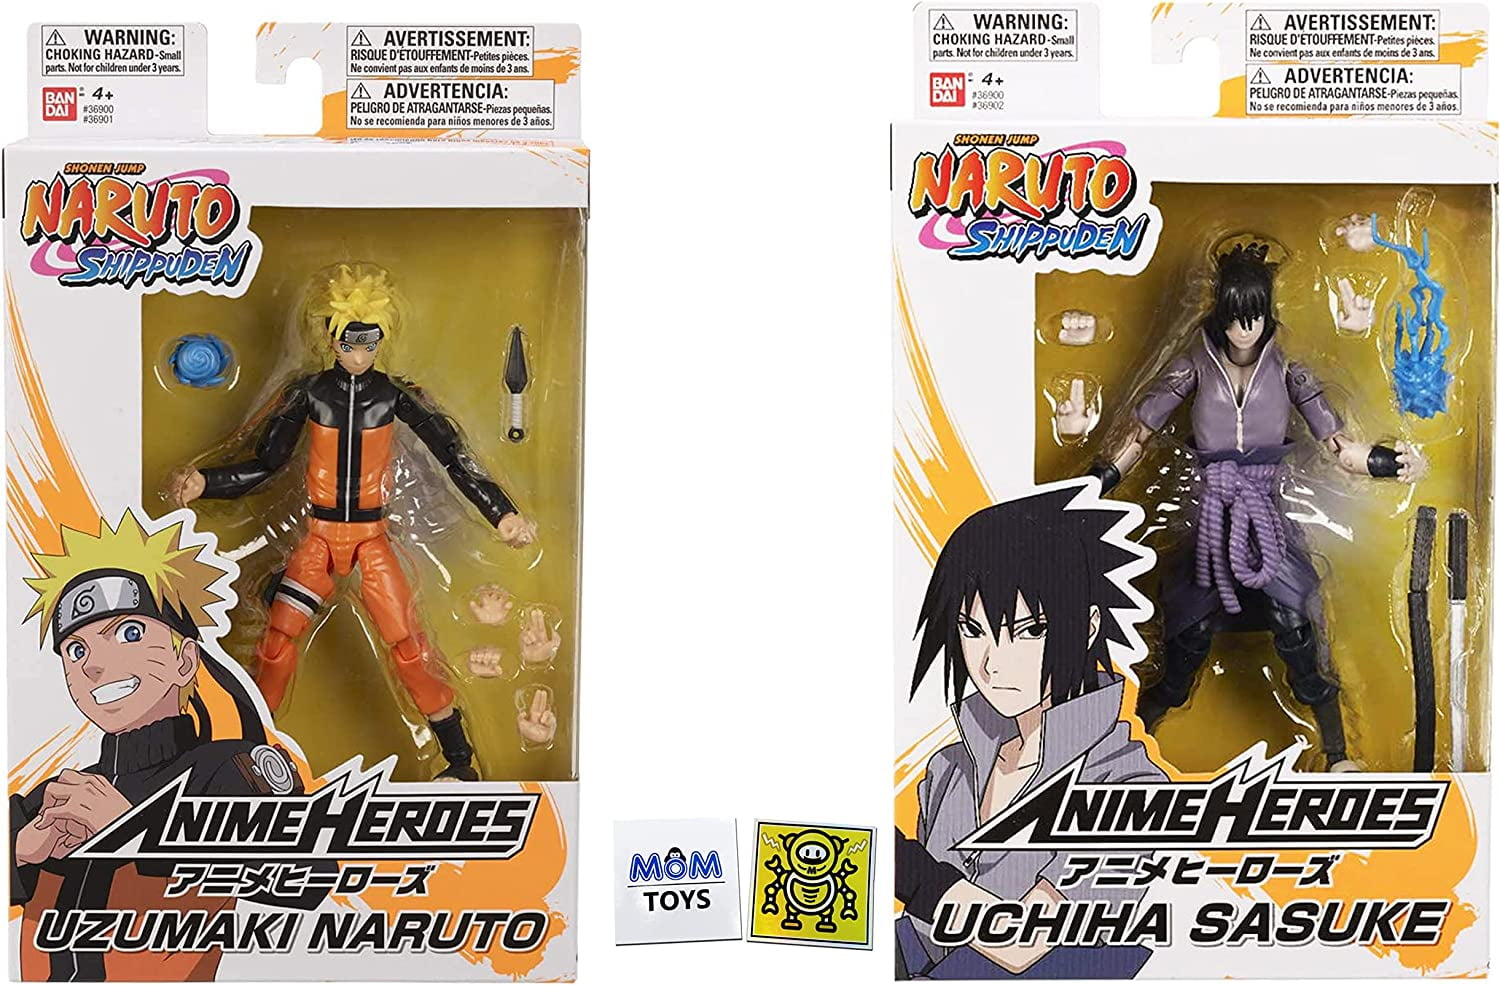 Free: Sasuke Uchiha Naruto Shippuden: Naruto vs. Sasuke Naruto Uzumaki   